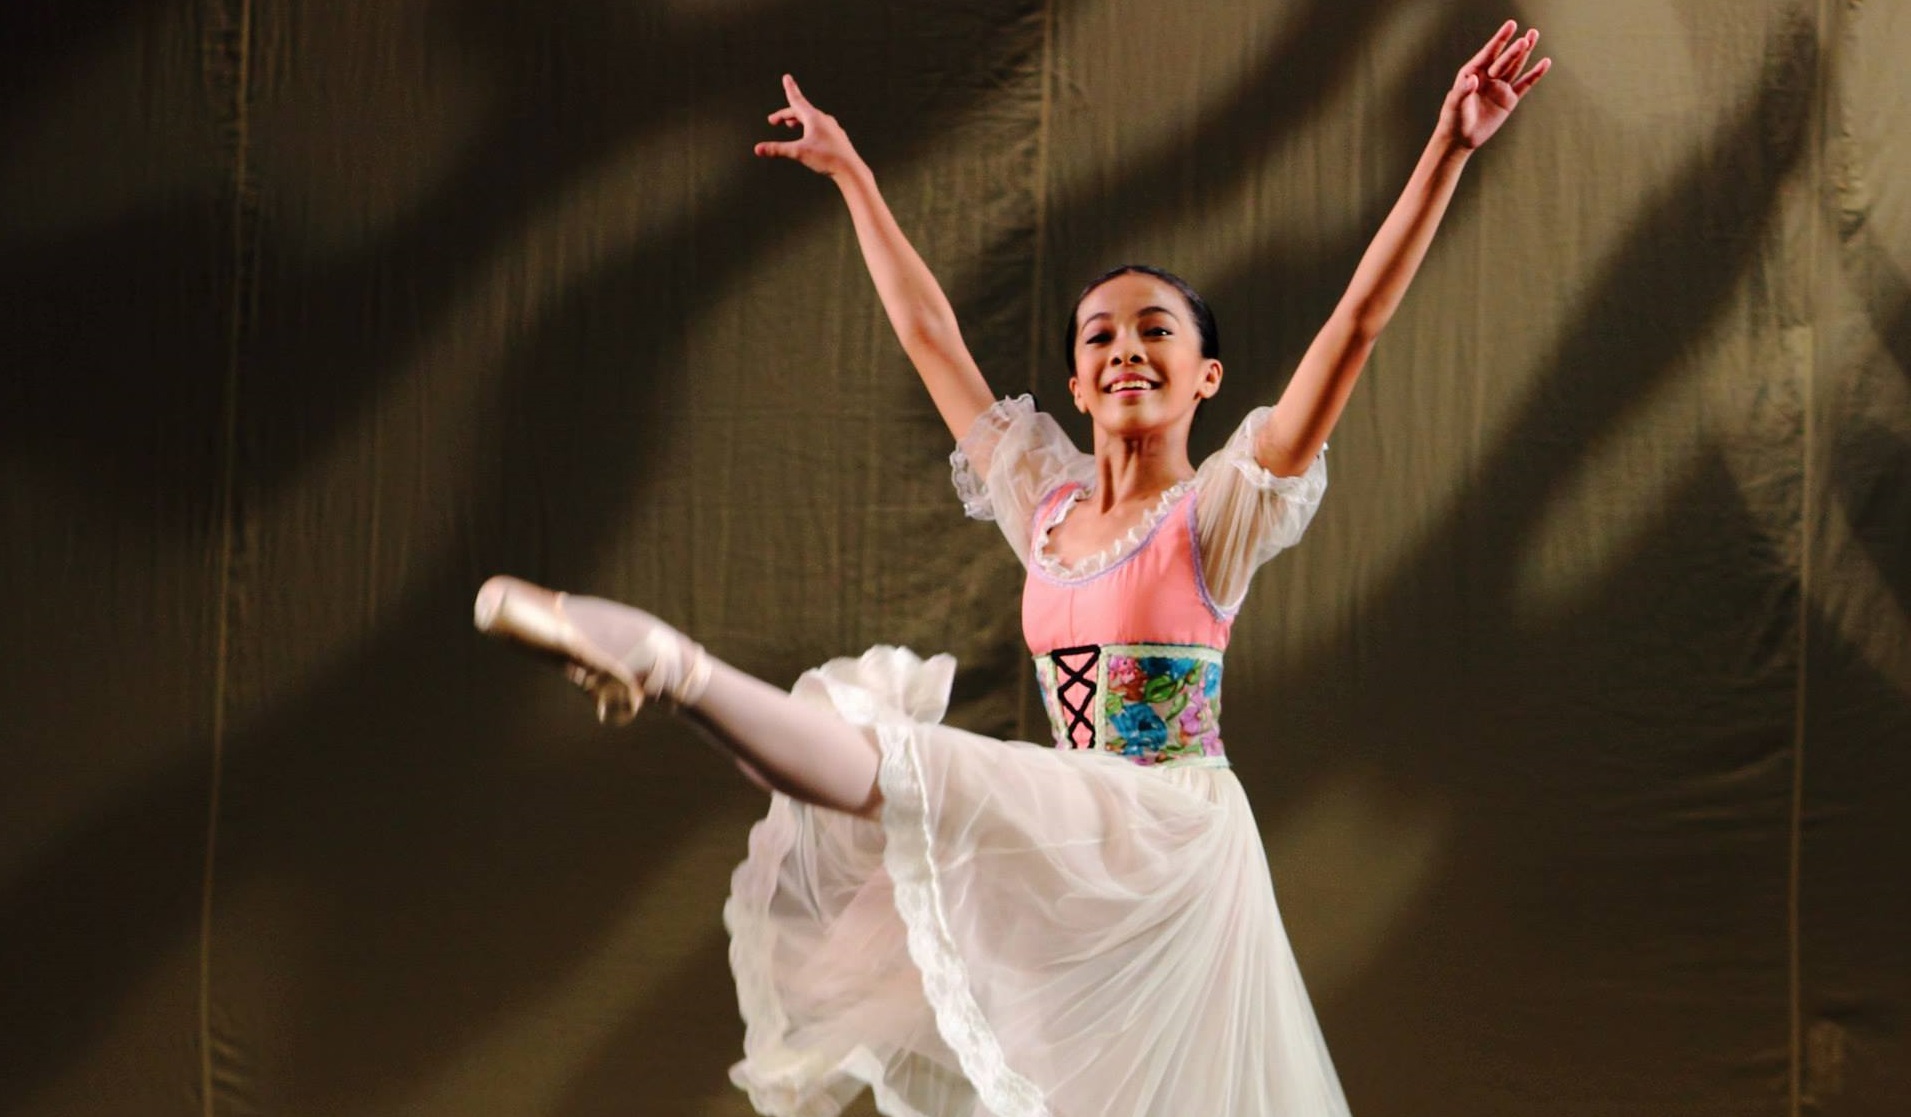 Neeka Barroso fulfills her ballerina dreams